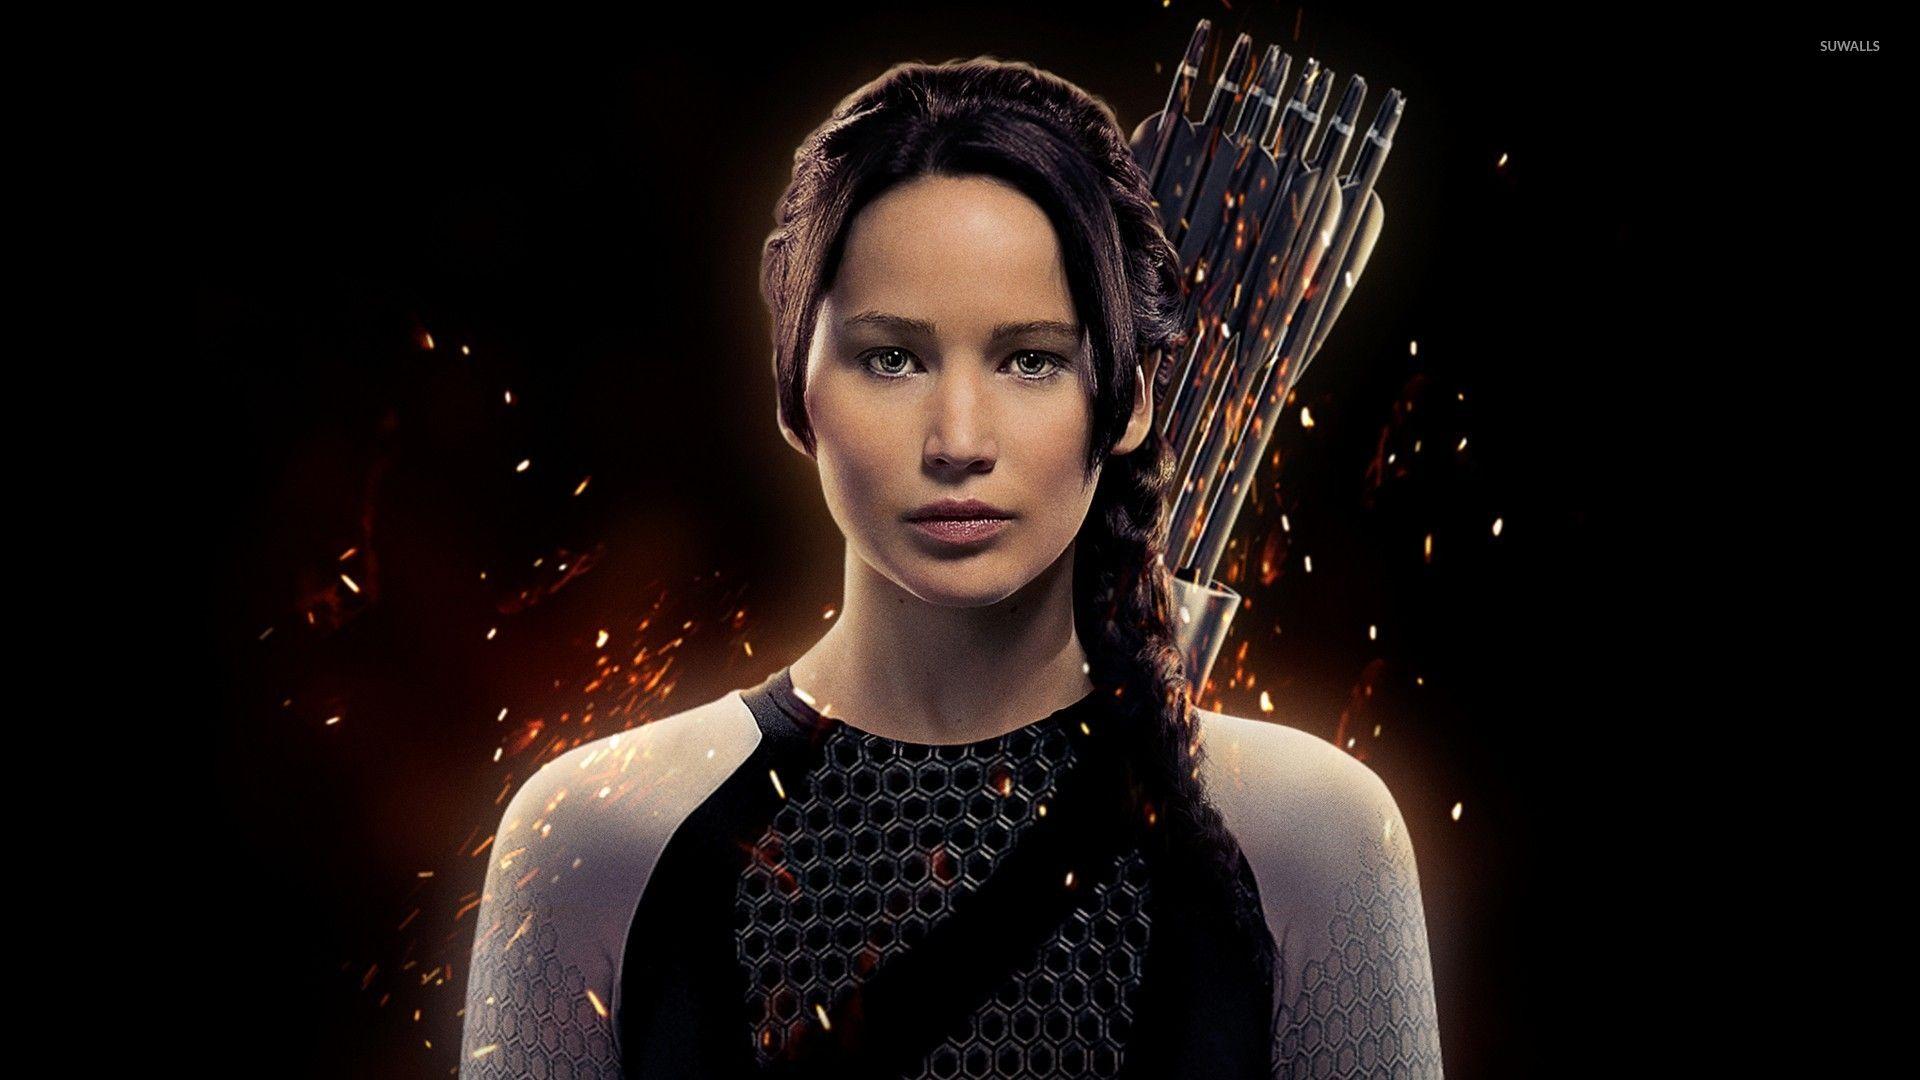 Movies Katniss Everdeen The Hunger wallpaper Desktop, Phone